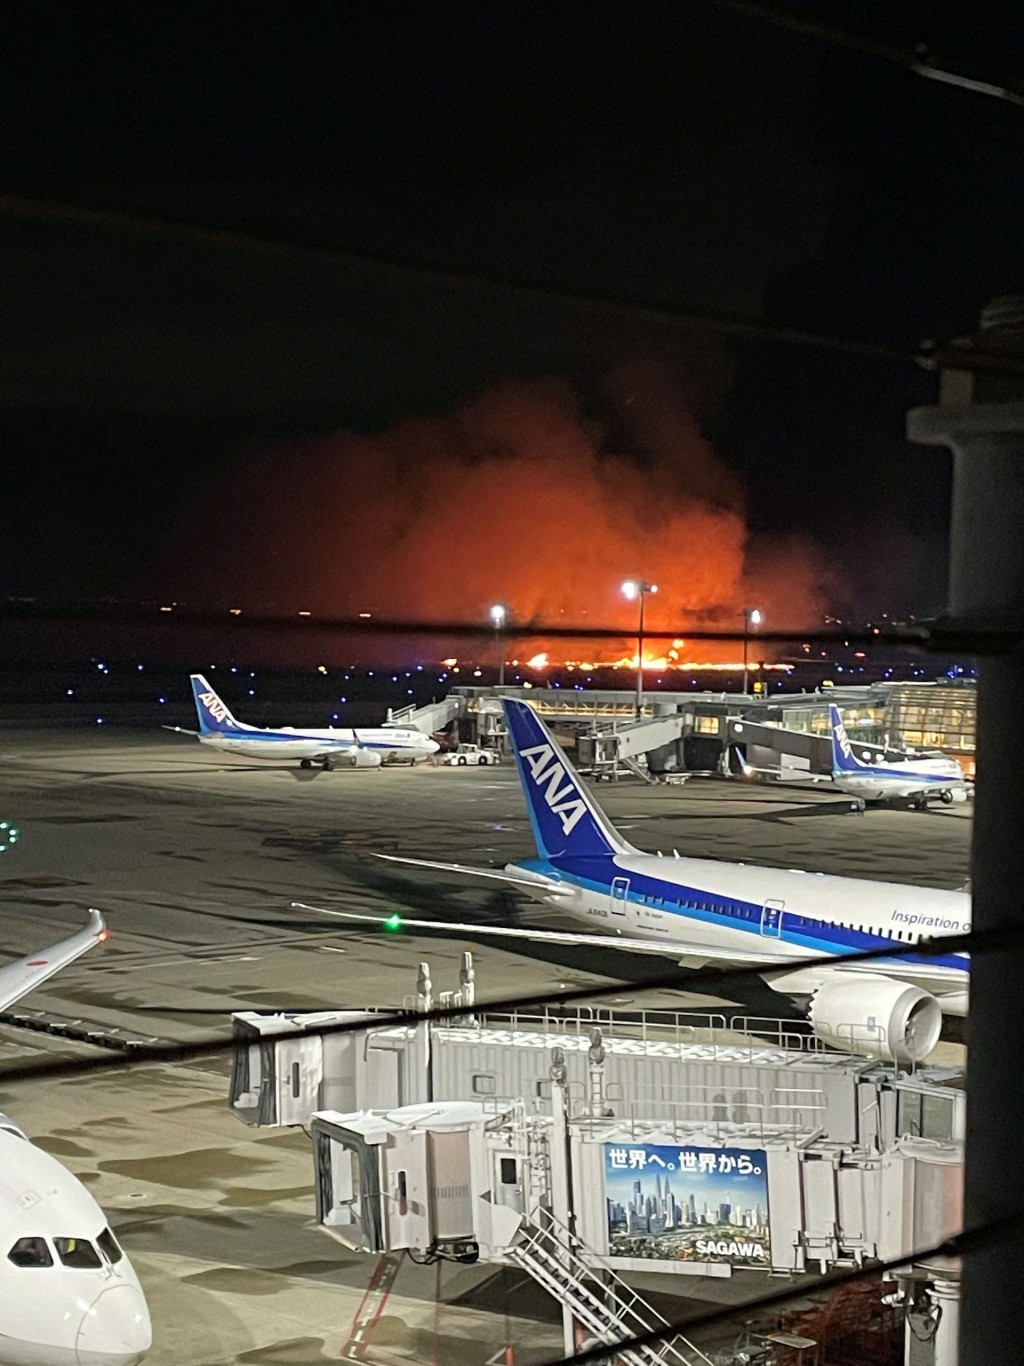 日本航空JAL516客機在東京羽田機場與海上保安廳飛機擦撞起火，造成5死1重傷事件。 路透社